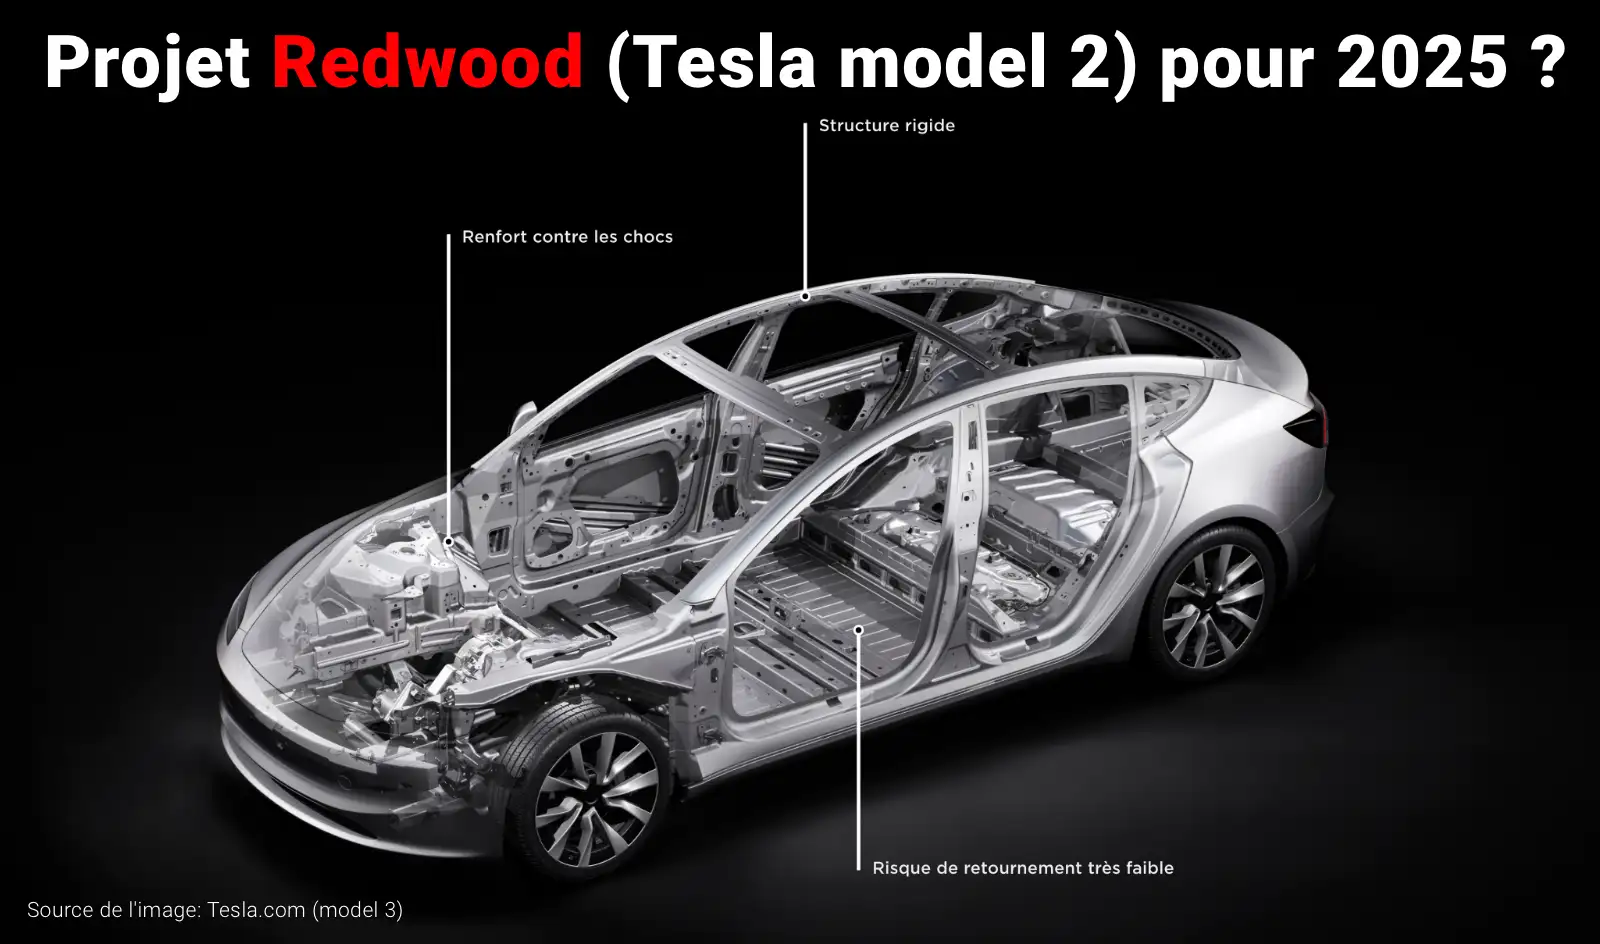 tesla model 2 pour 2025: la redwood